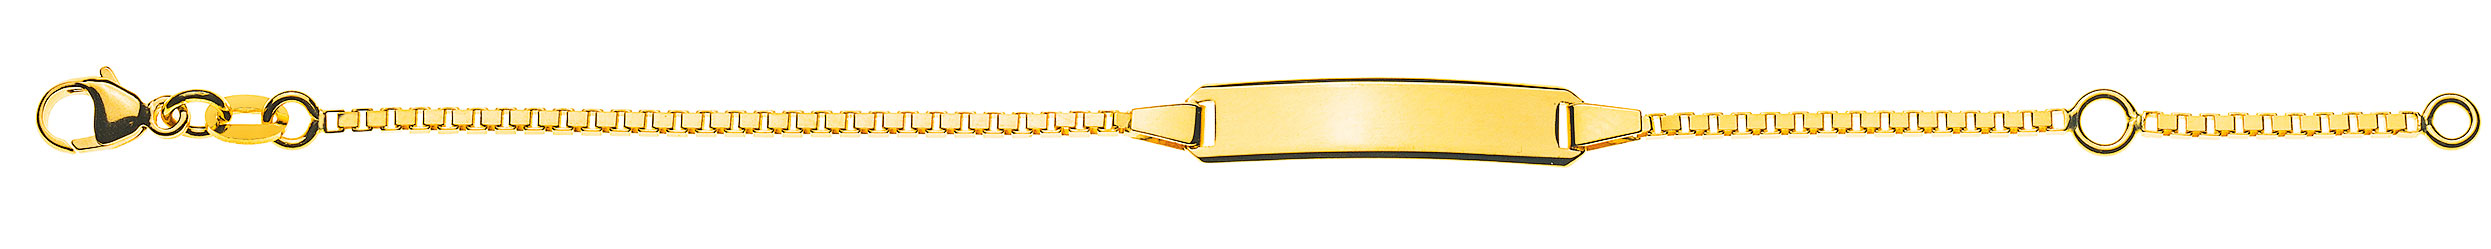 AURONOS Prestige ID-Bracelet en or jaune 18k Chaîne vénitienne diamantée 14cm